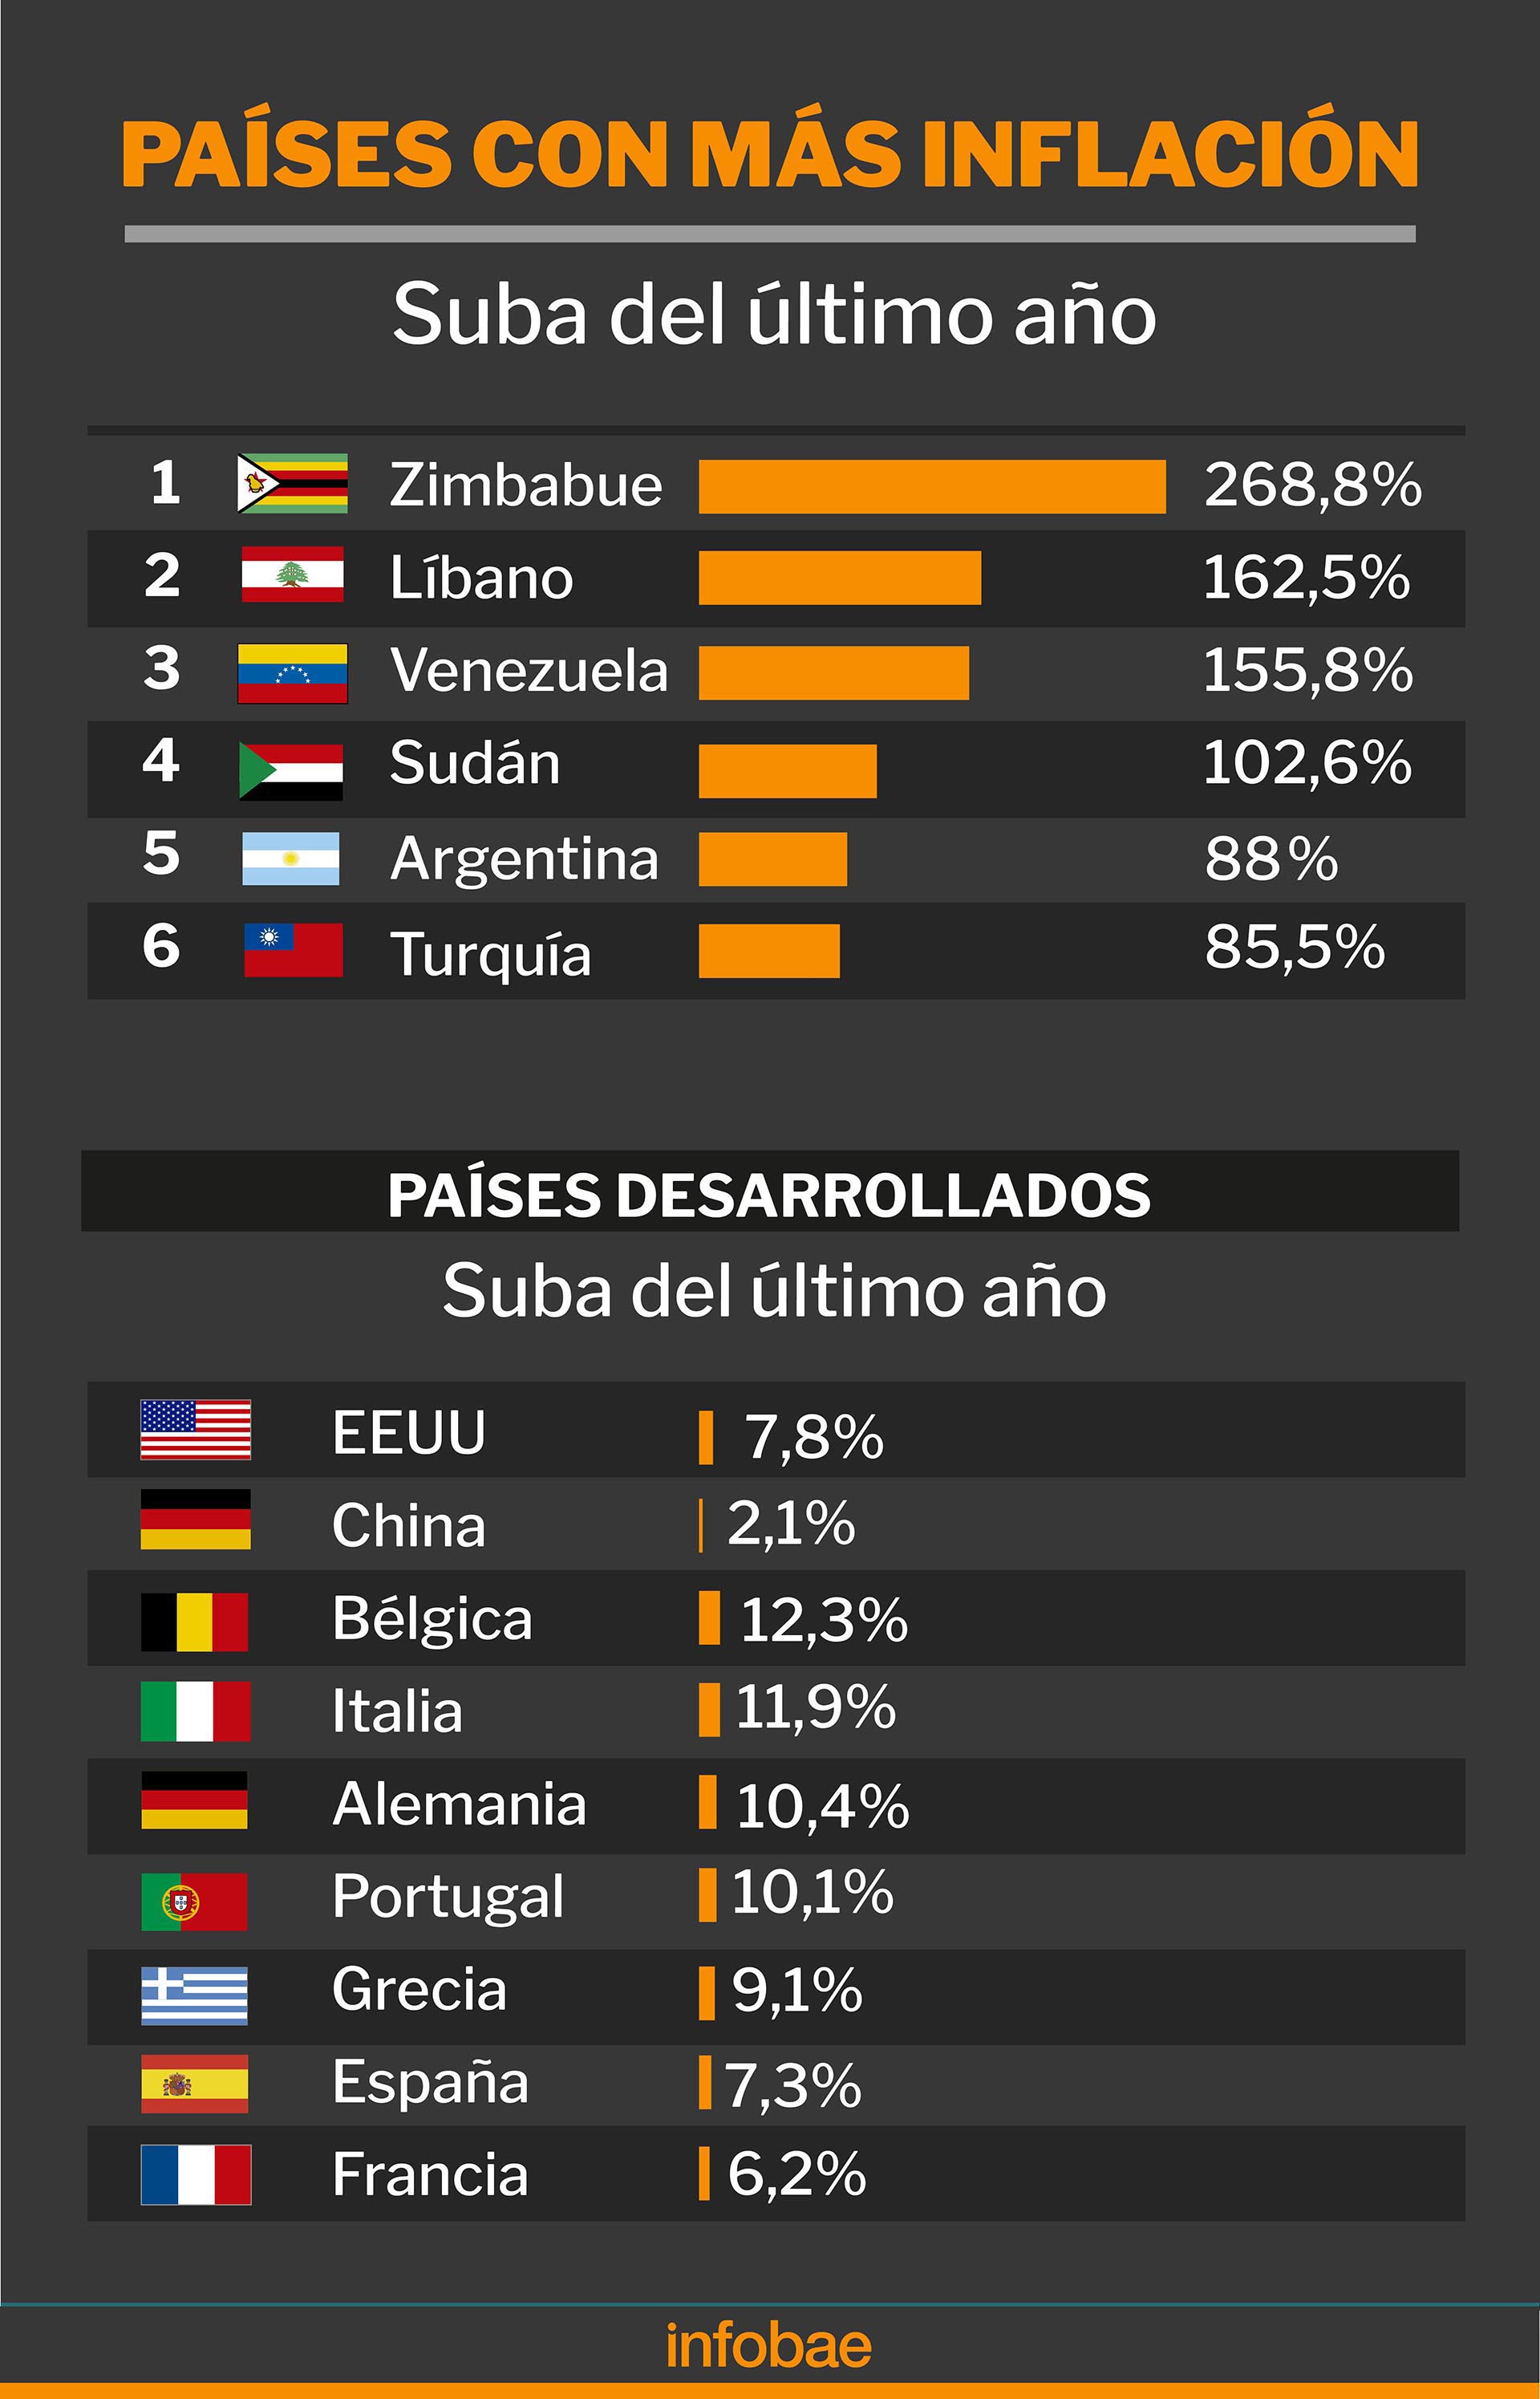 Los países con más inflación el último año
Infografía de Marcelo Regalado